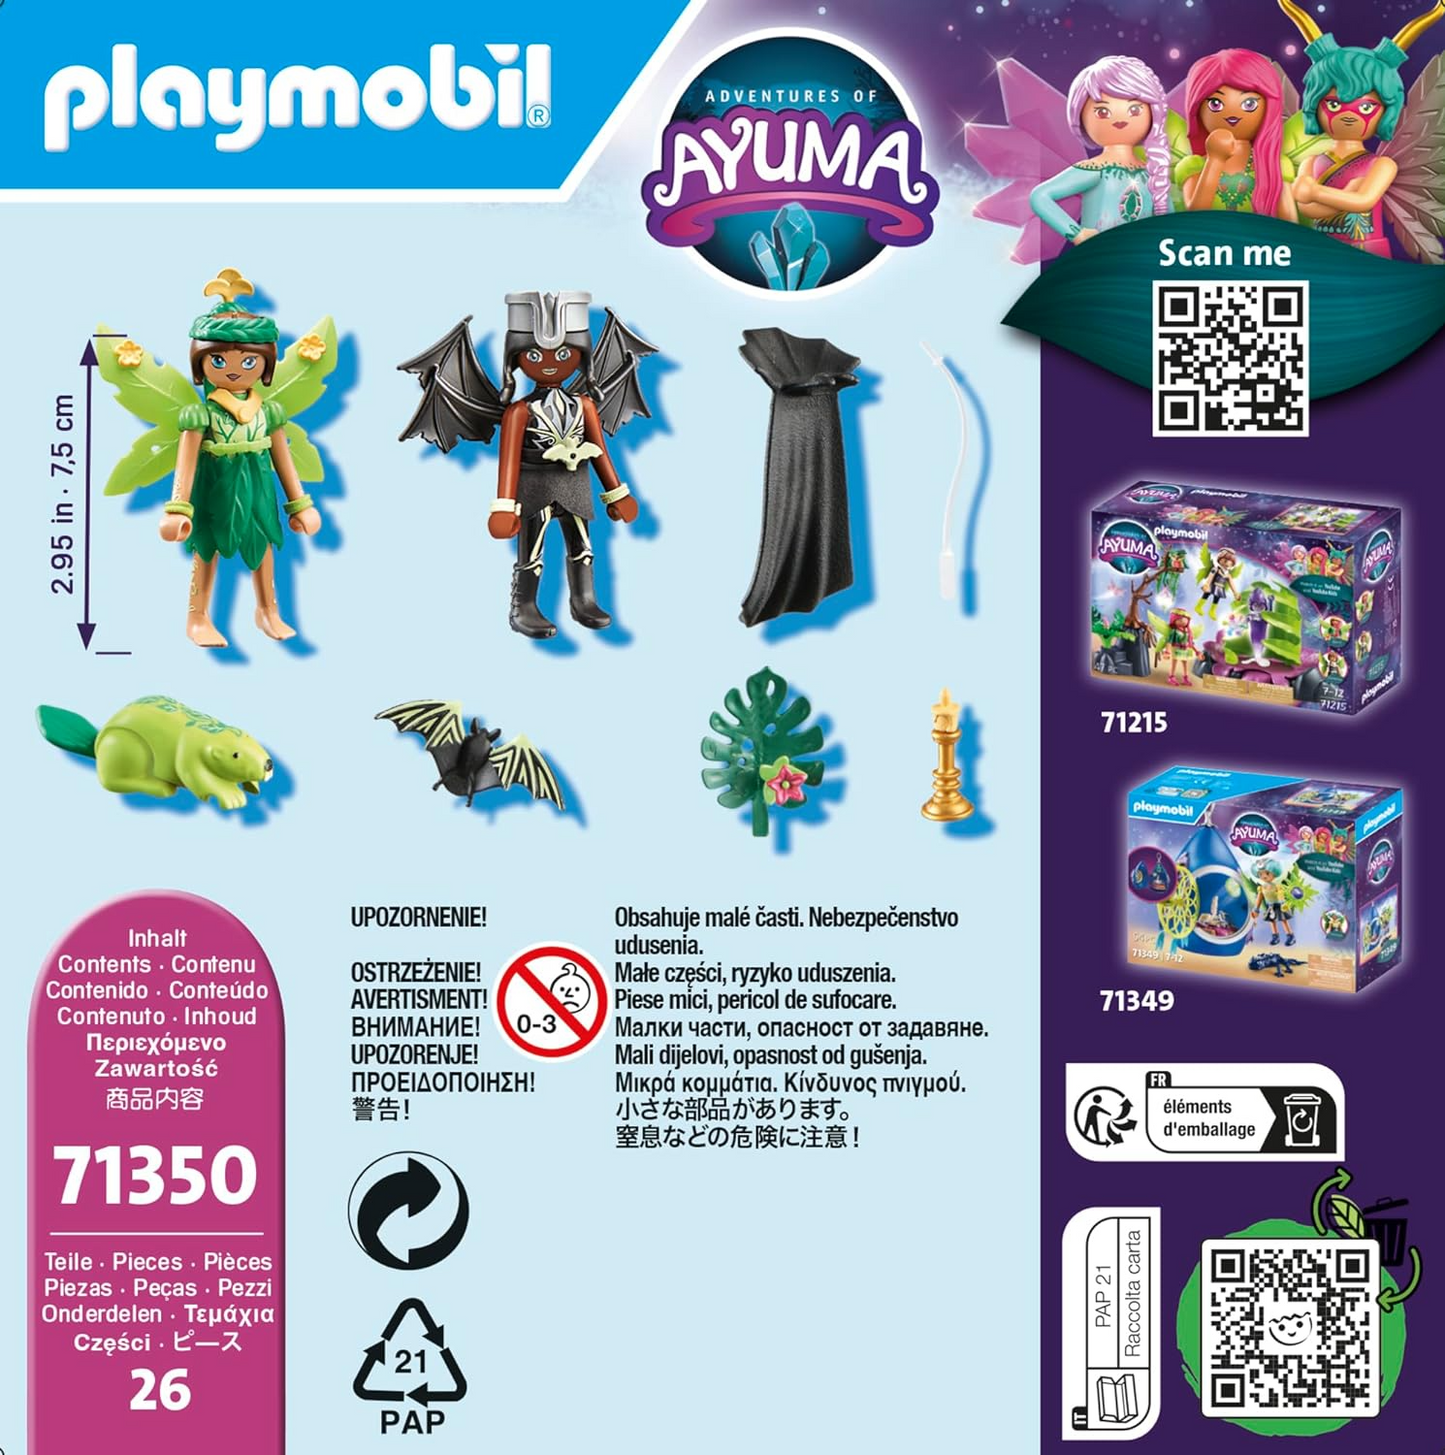 Playmobil 71350 Aventuras de Ayuma - Fada da Floresta e Fada do Morcego com Animais da Alma, floresta mística, fadas da lua e da alma, encenação divertida e imaginativa, conjuntos de jogos adequados para crianças de 7 anos ou mais